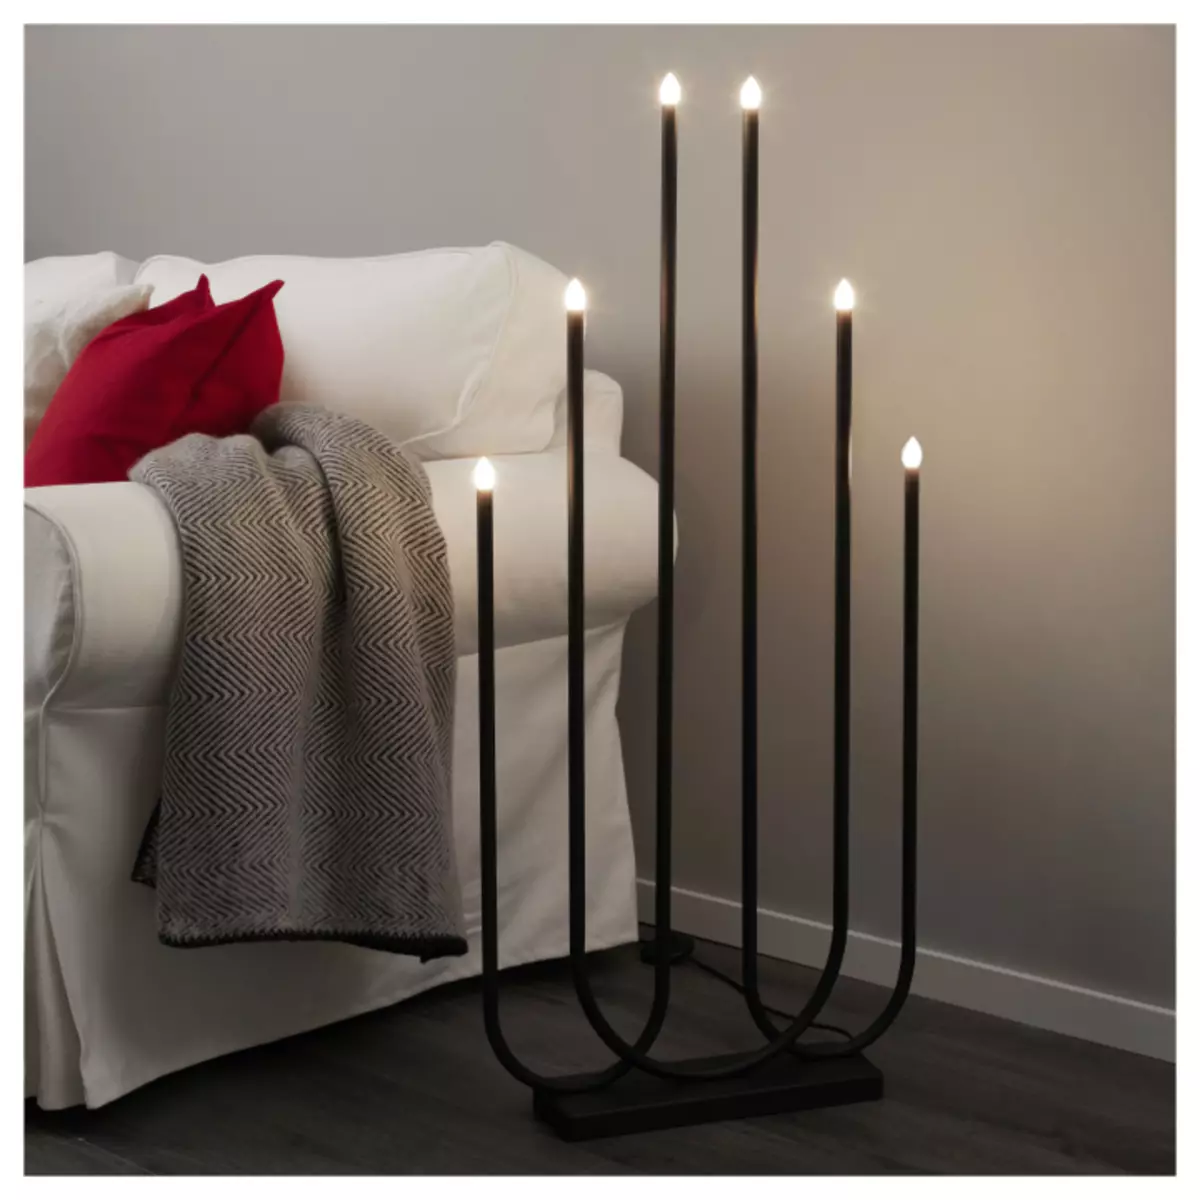 Ikea Candlesticks: jiro sy candelabra, fotsy, vera, metaly ary labozia hafa mijoro. Fampiharana ao anatiny 13151_10